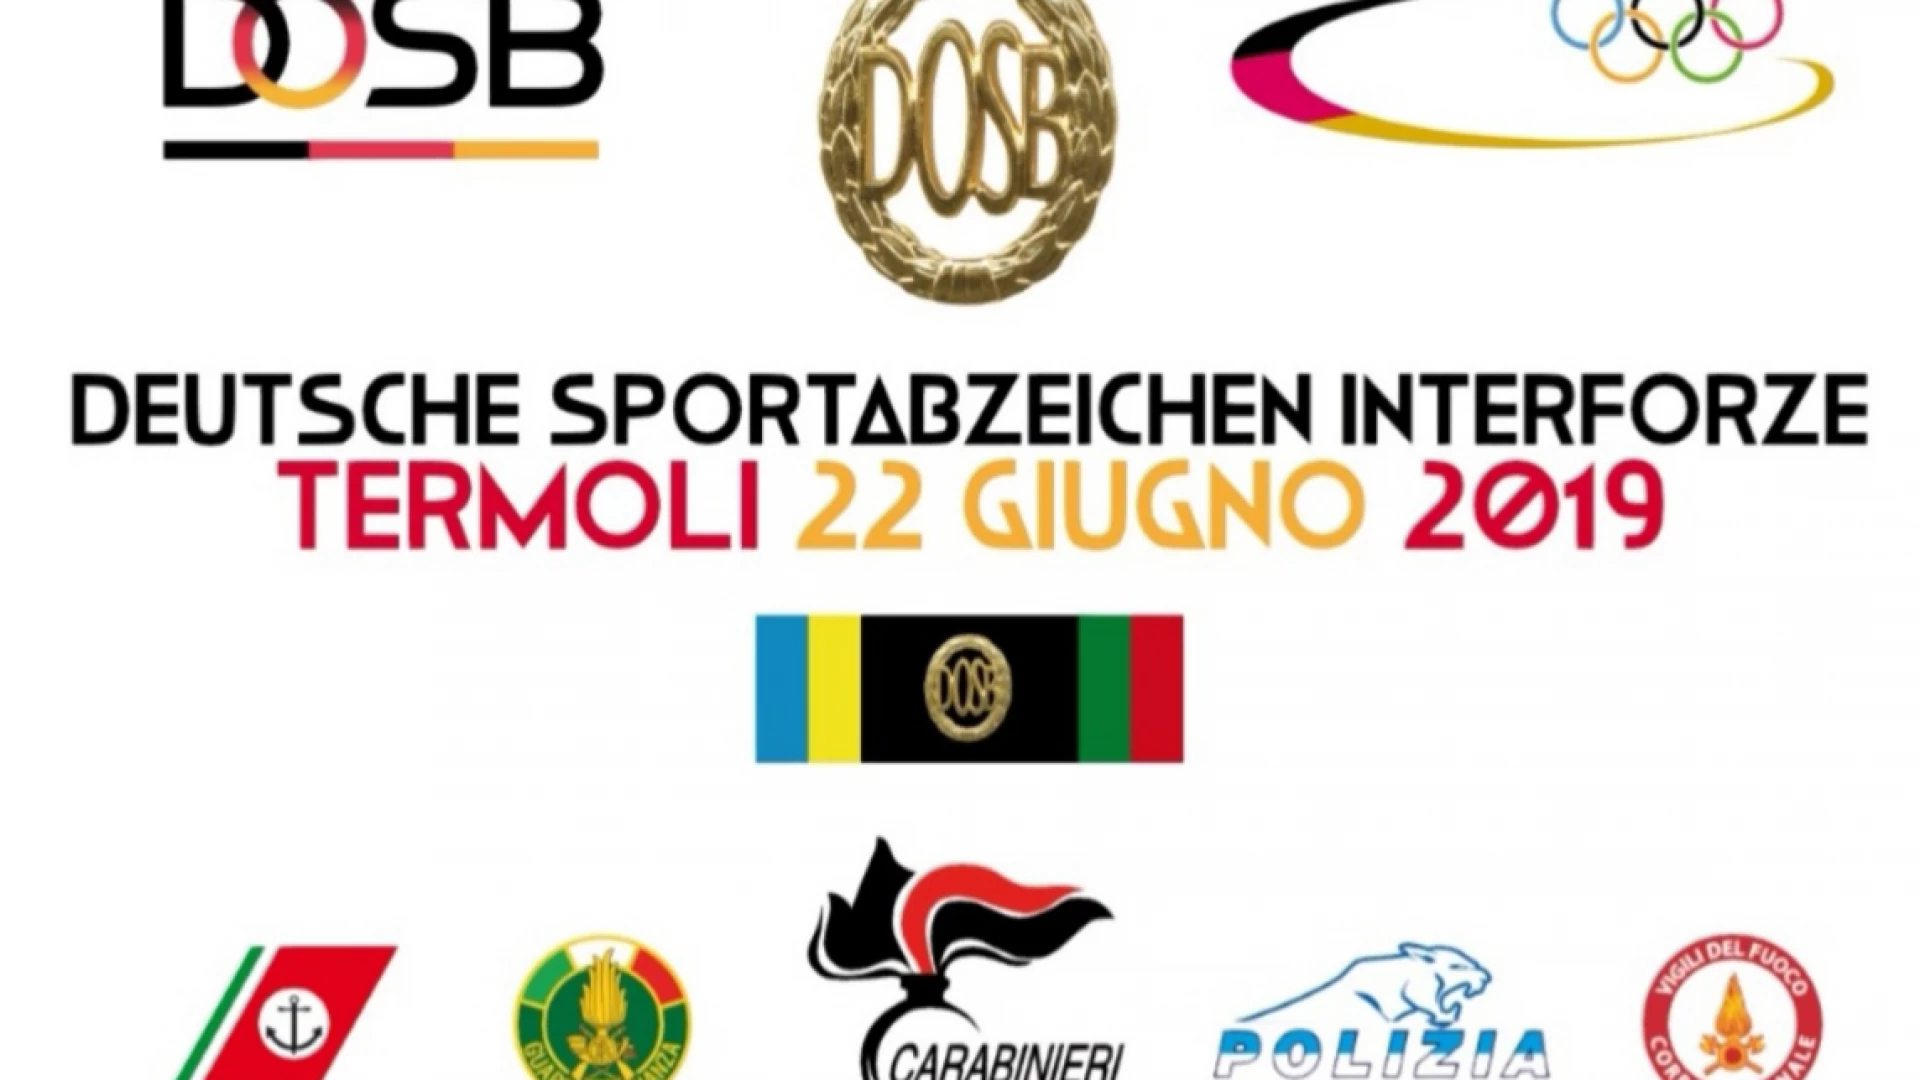 A Termoli la possibilità di conseguire il Deutsches Sportabzeichen. Gli atleti si sfideranno in diverse discipline sportive.